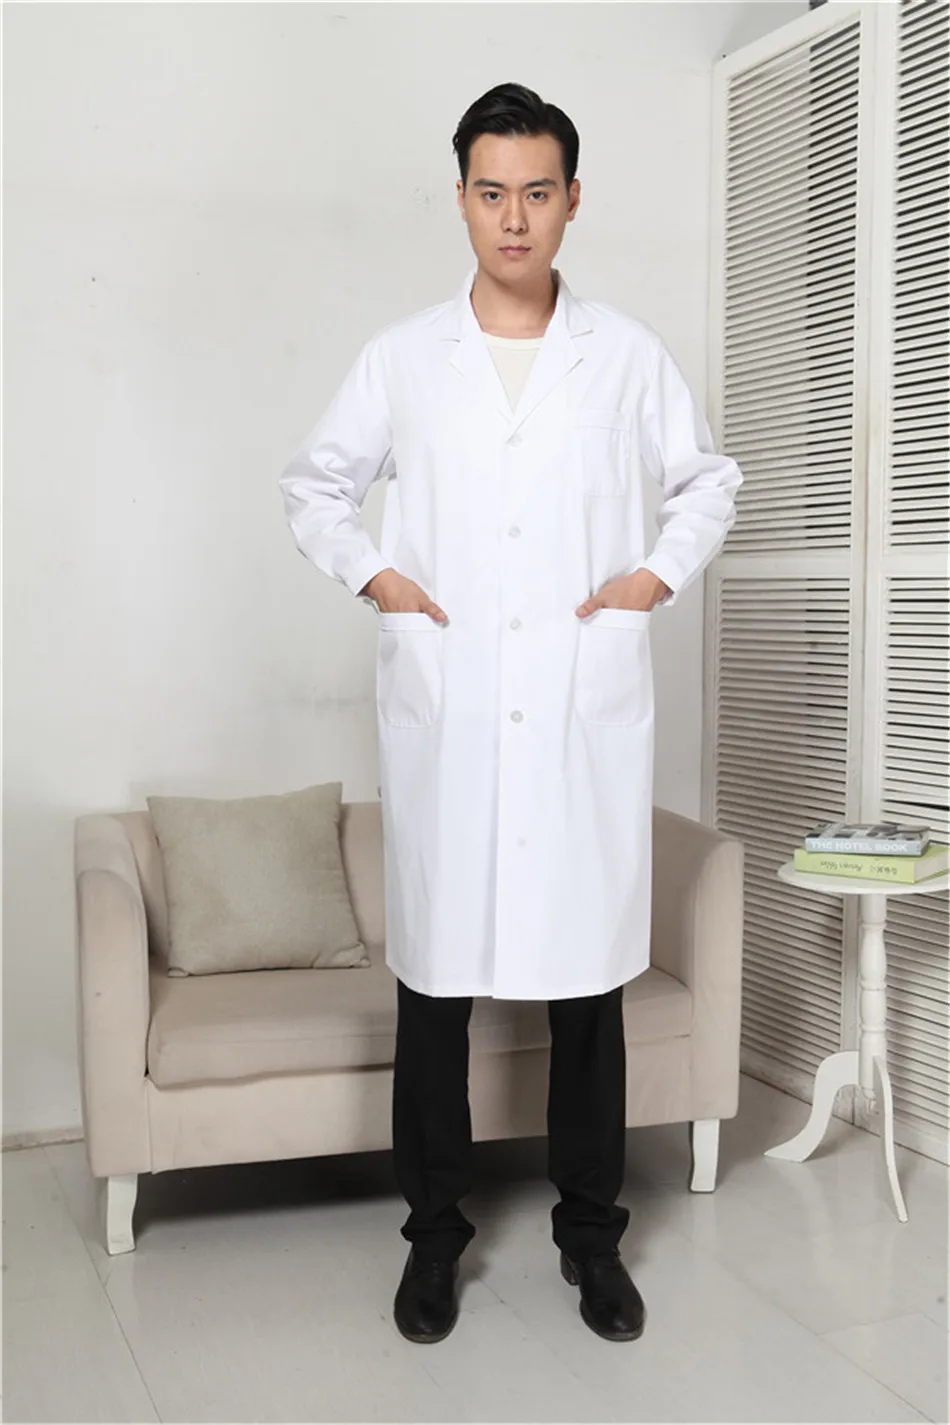 Женская медицинская одежда, мужское больничное лабораторное пальто, униформа белого цвета с длинными рукавами, костюм с воротником, медицинская одежда для мужчин, медицинская одежда